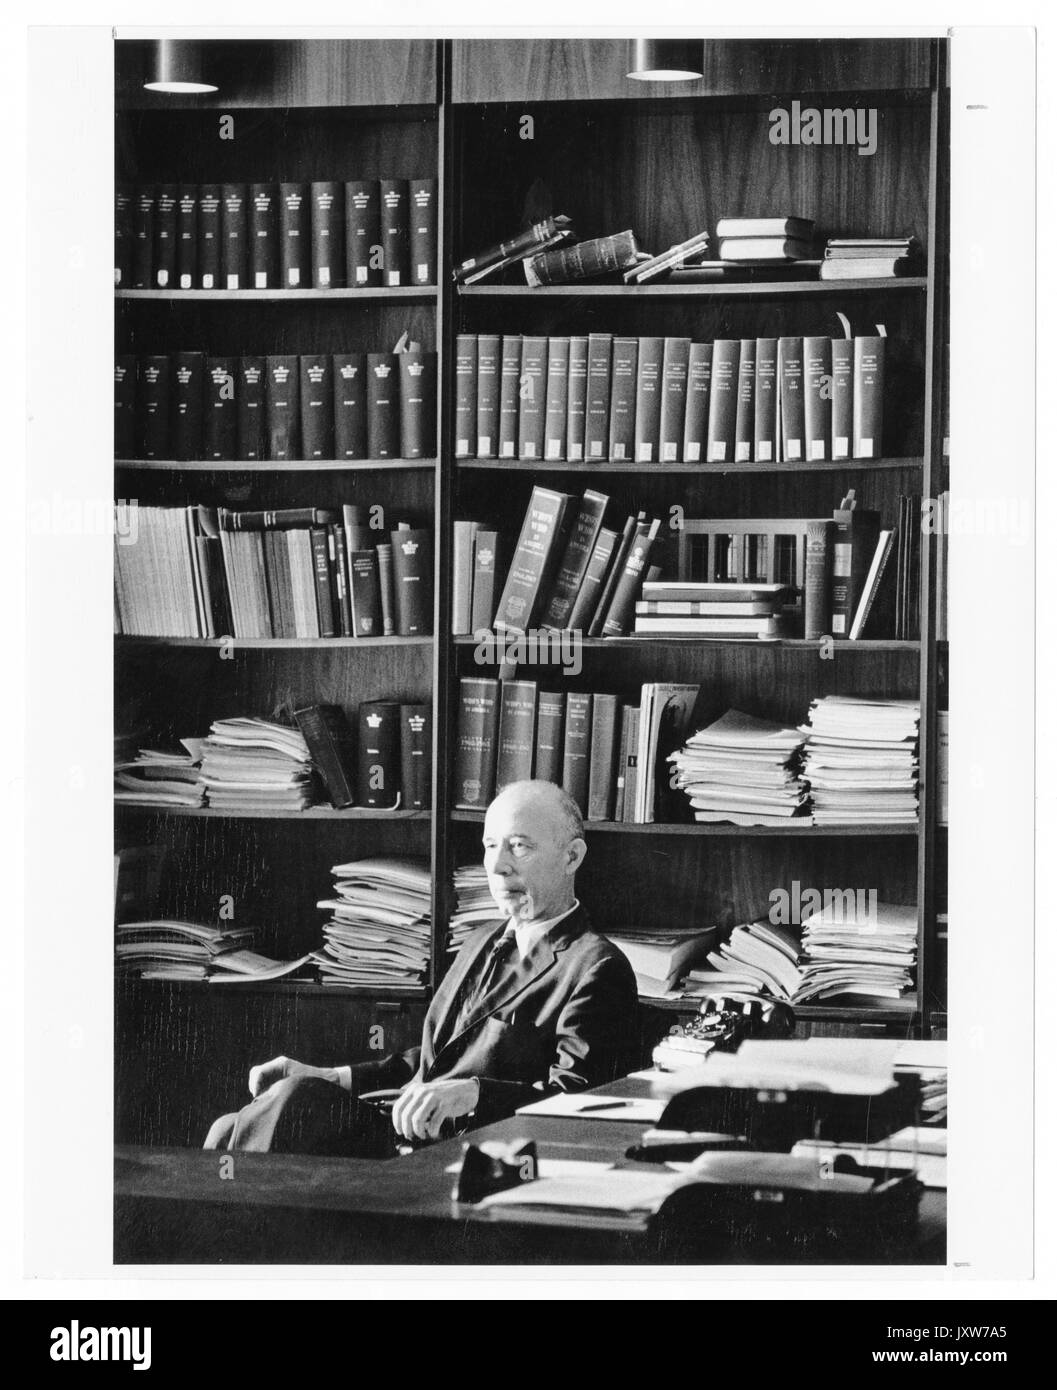 John hallock berthel, portrait photographique, assis, jusqu'à la taille, vue de trois-quarts, derrière un bureau et en face de bibliothèque, 1960. Banque D'Images